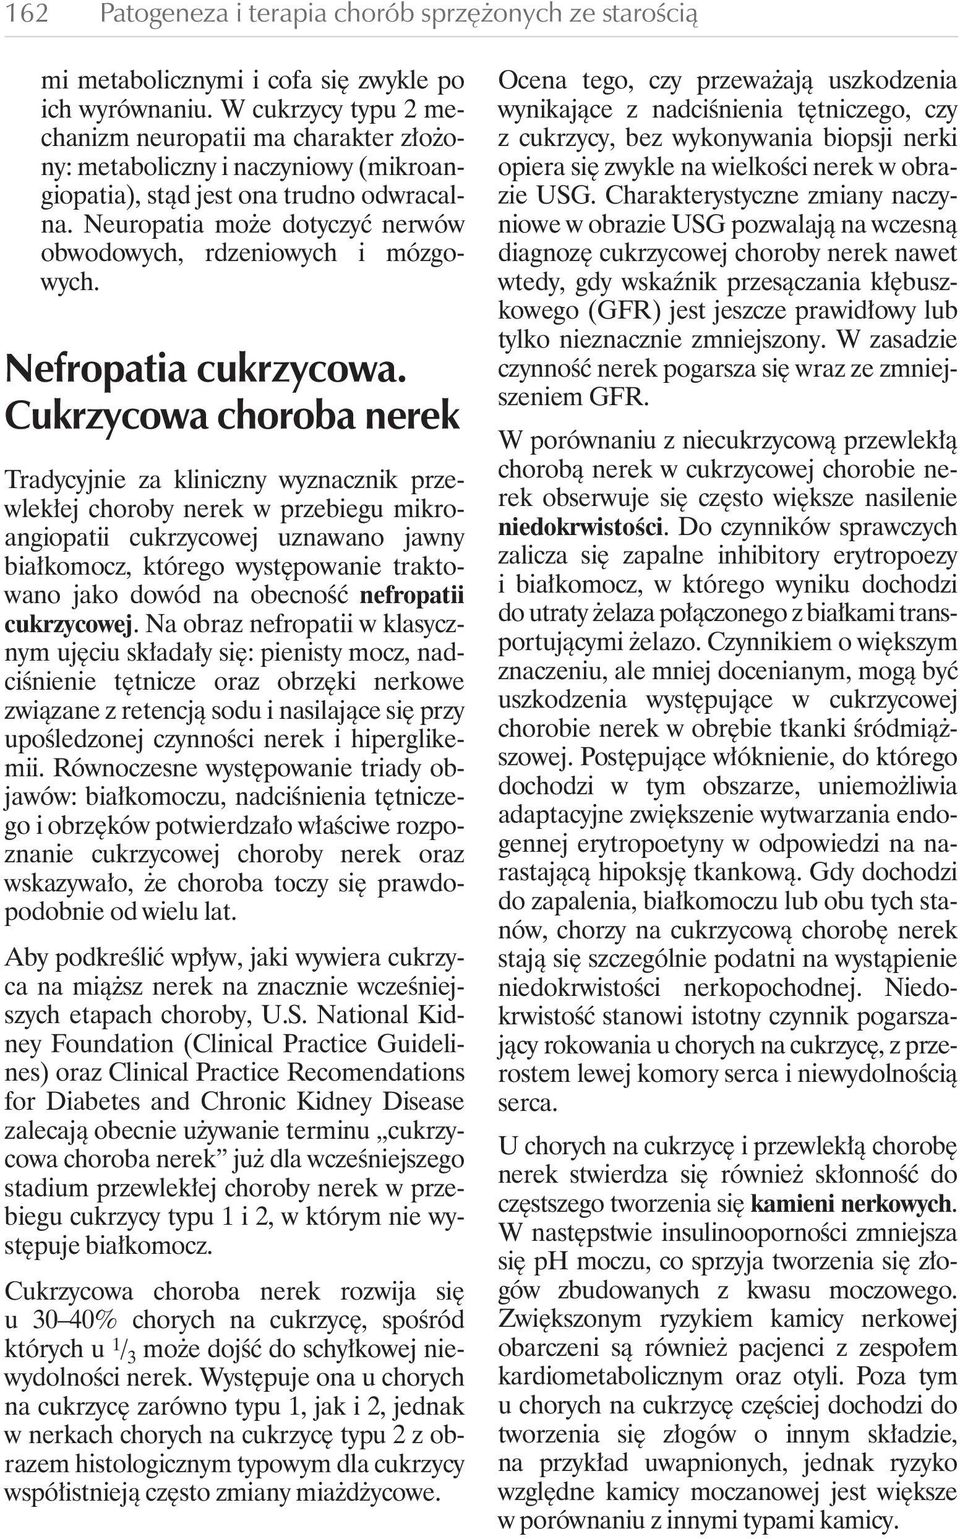 Neuropatia mo e dotyczyç nerwów obwodowych, rdzeniowych i mózgowych. Nefropatia cukrzycowa.